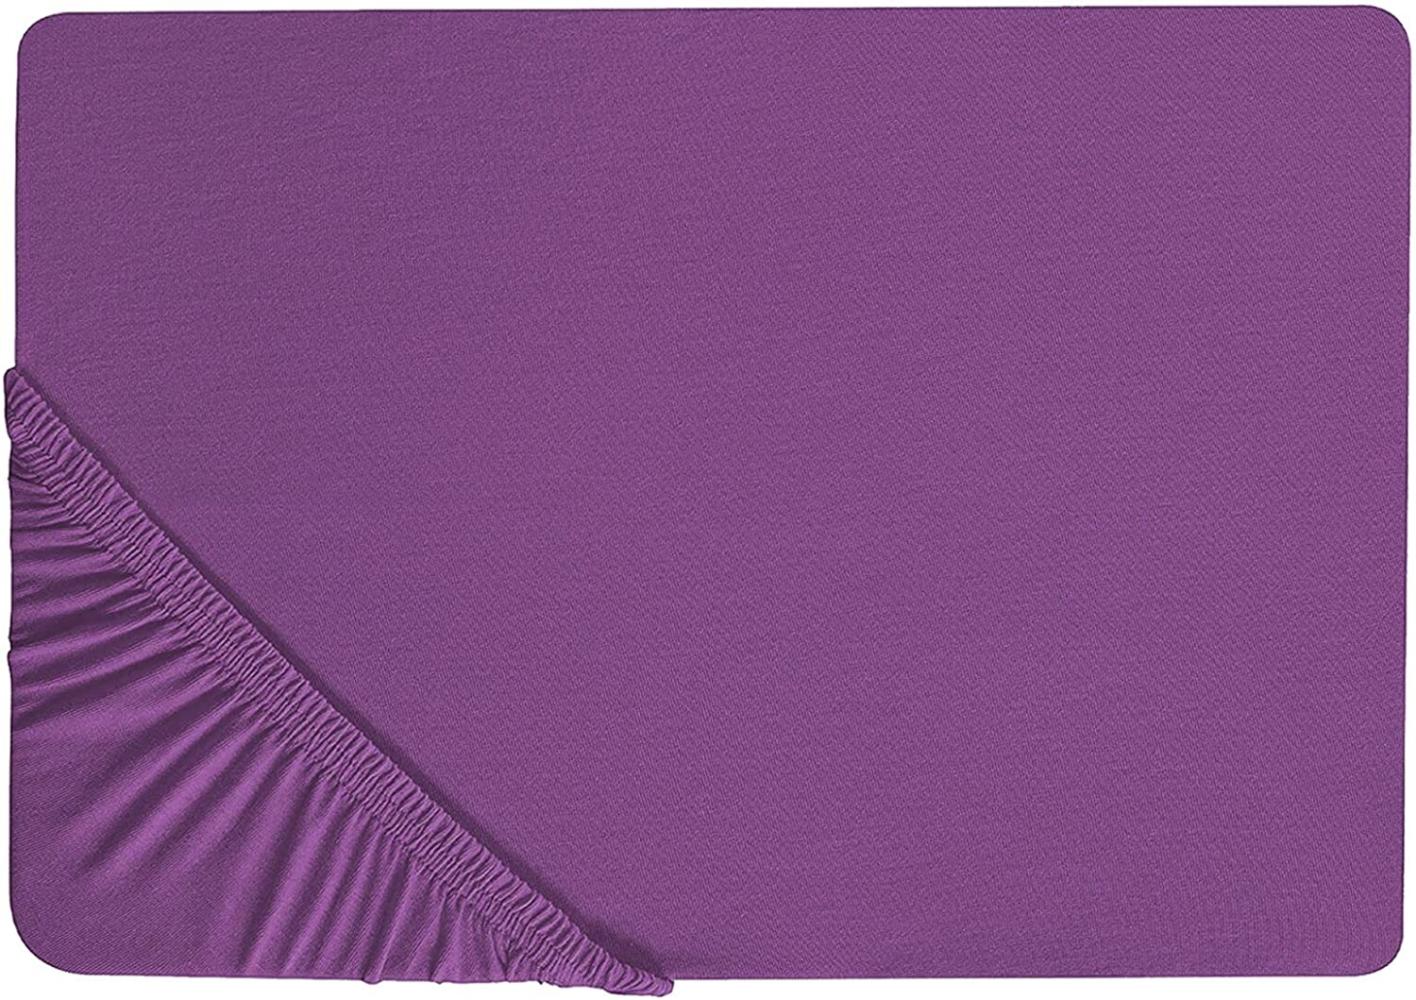 Spannbettlaken Baumwolle purpur 140 x 200 cm JANBU Bild 1